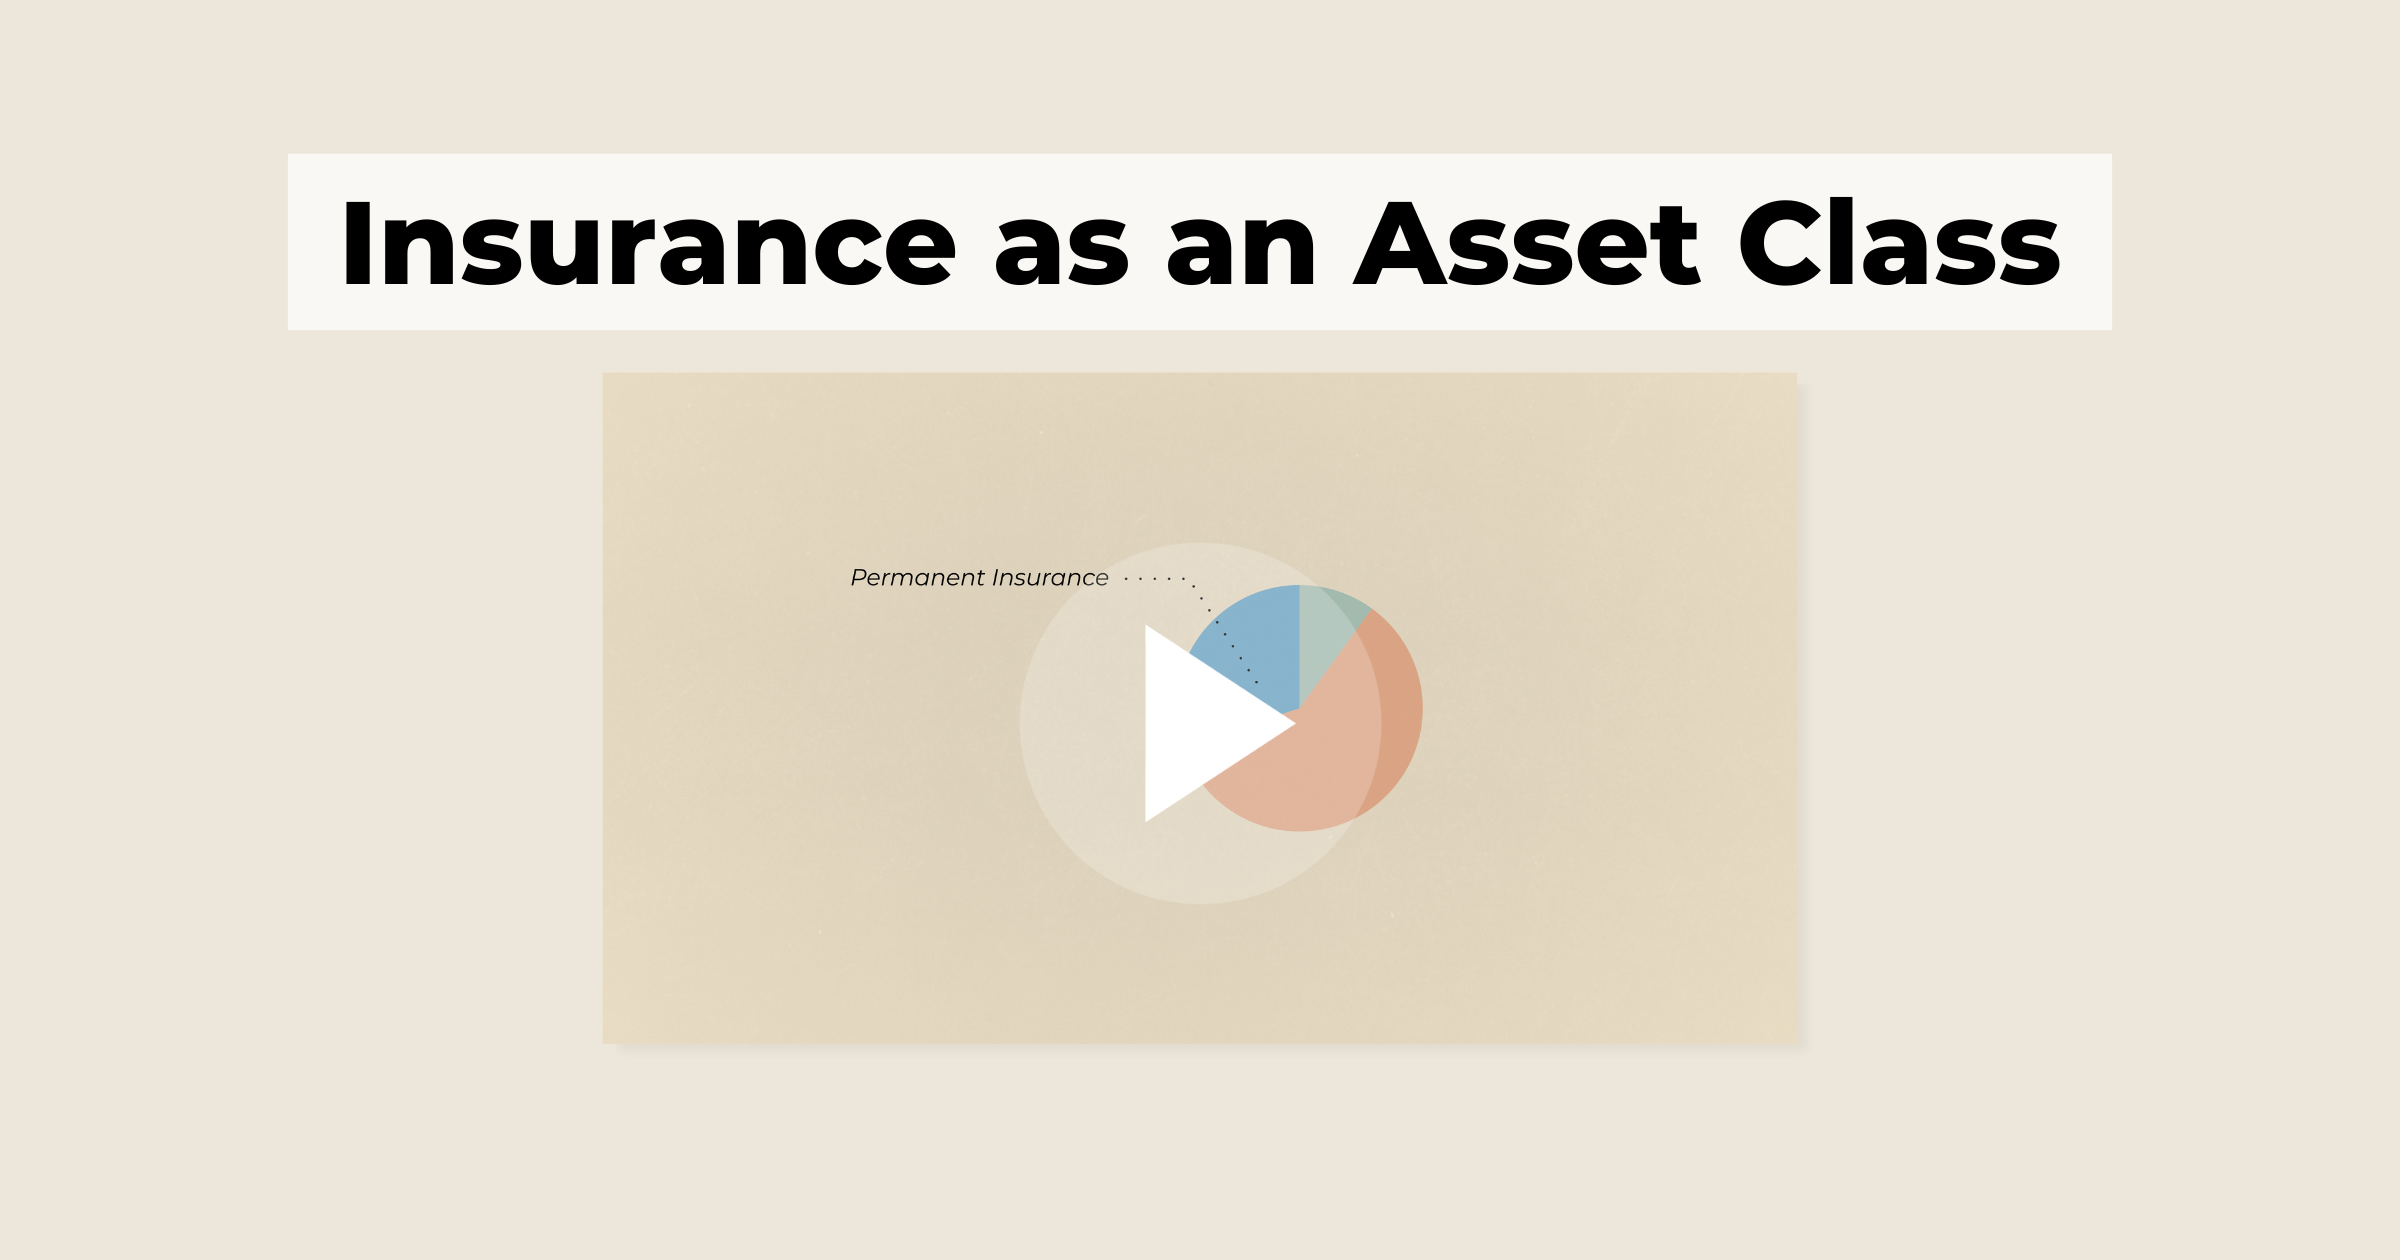 Insurance as an Asset Class